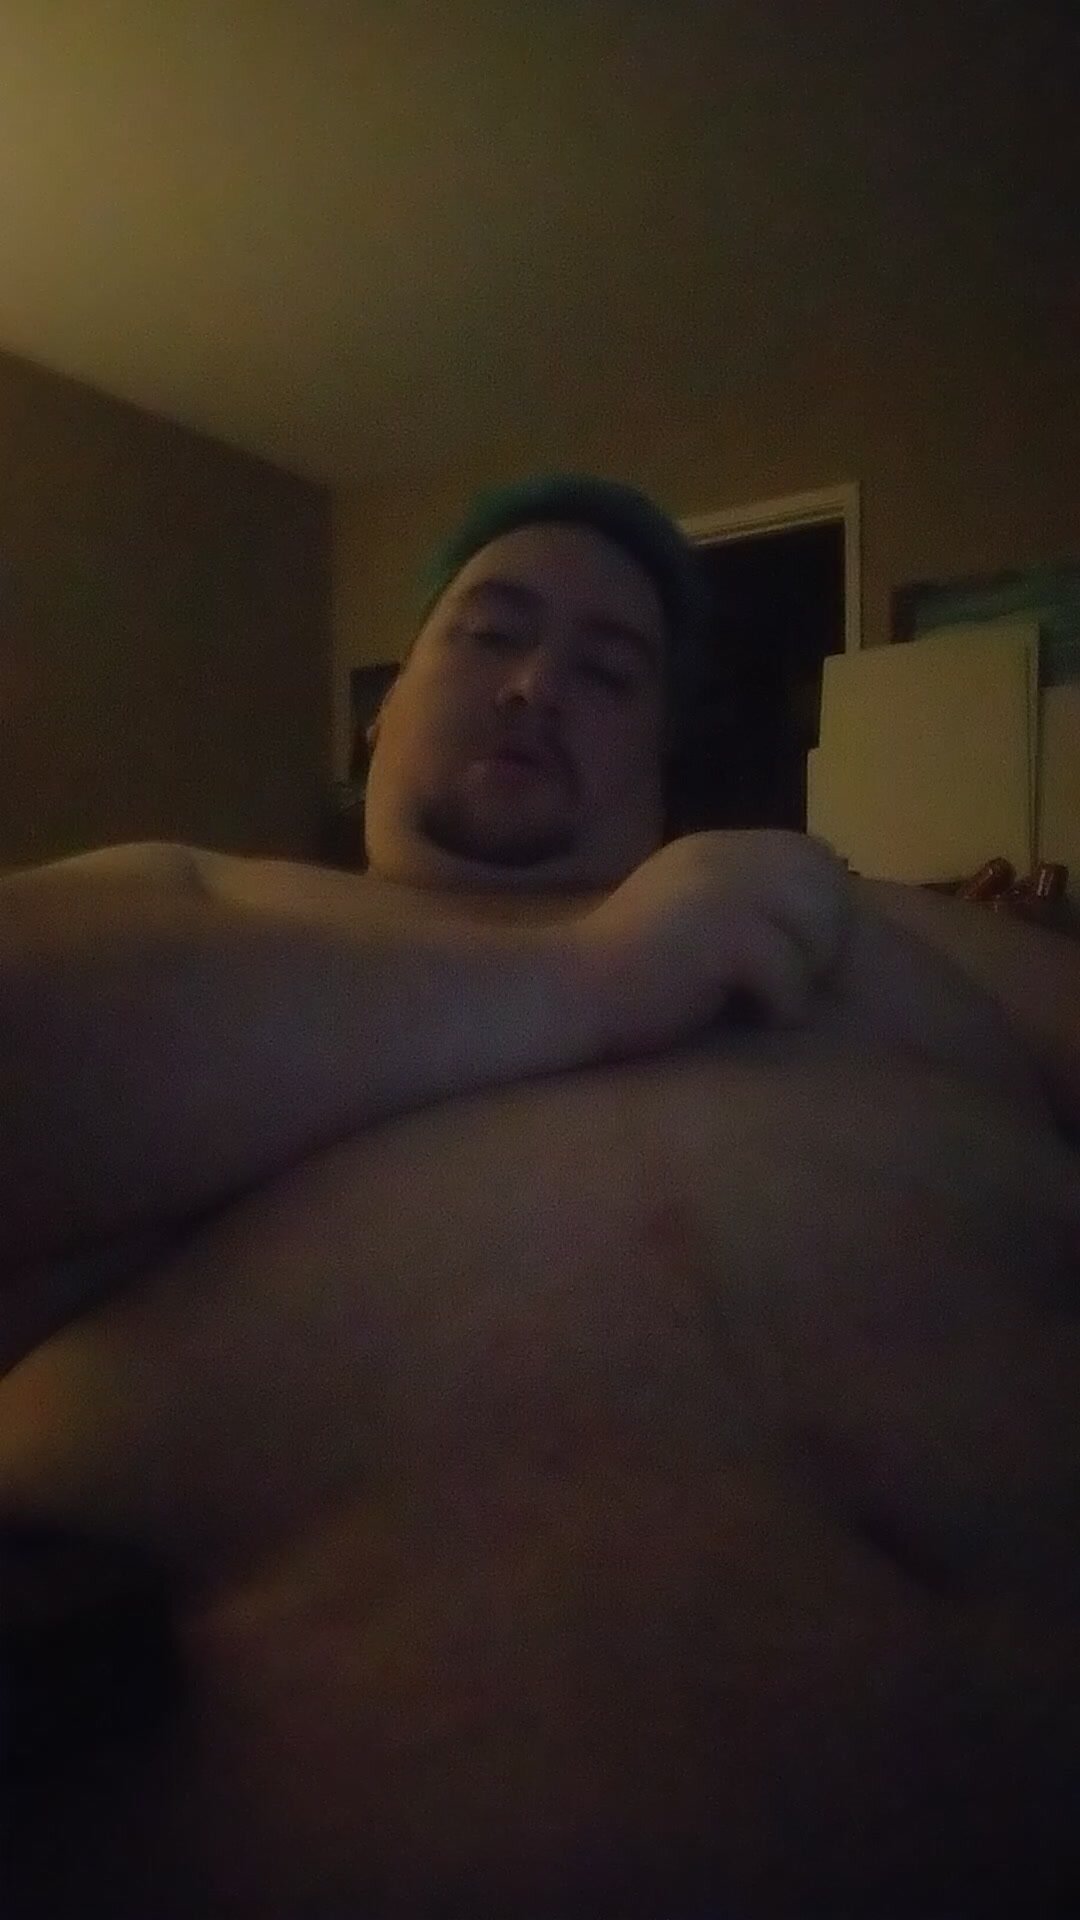 Chubby sucks on their own nipples